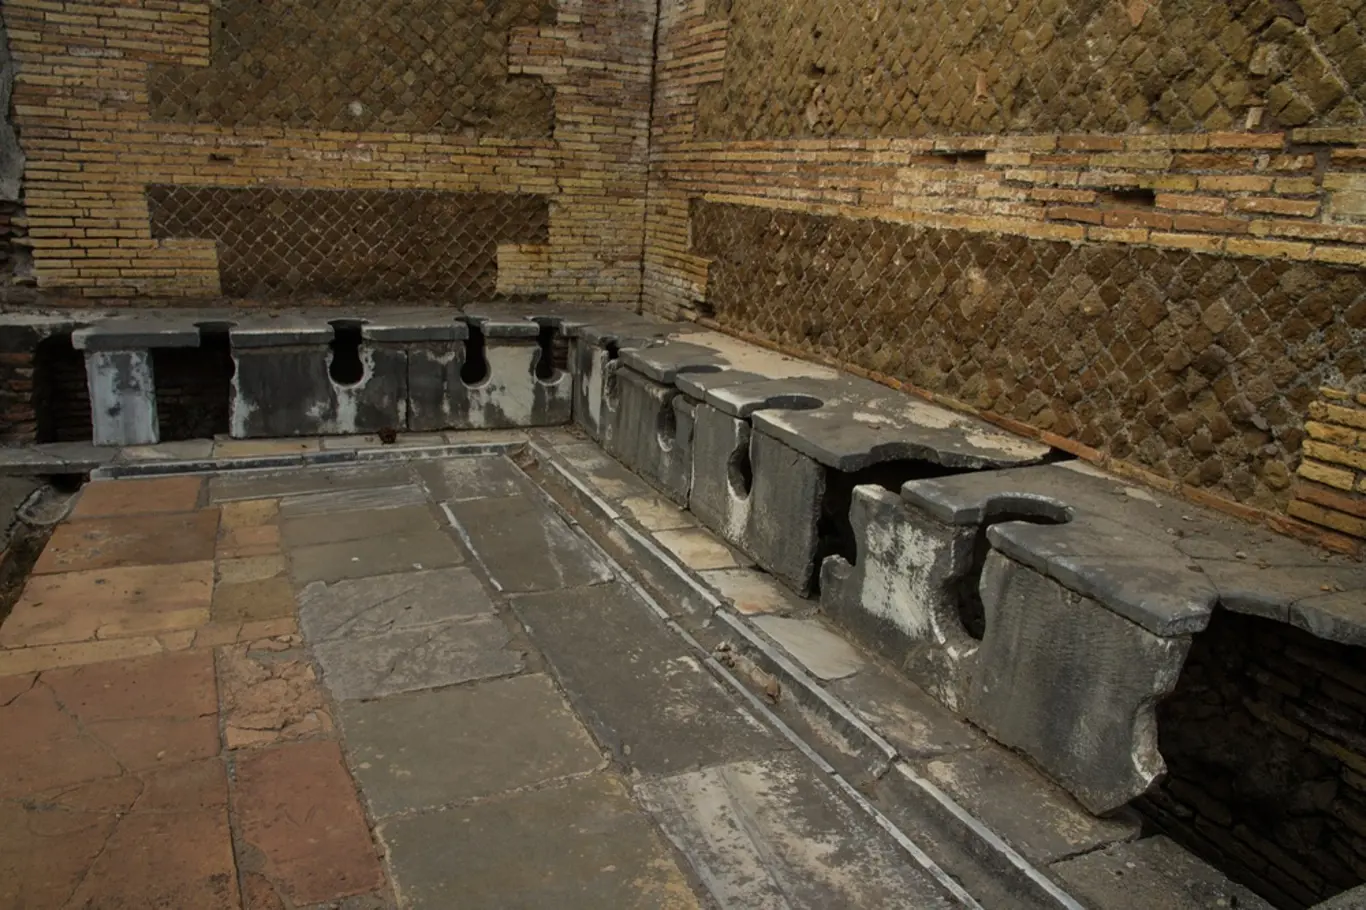 Na latrínách ve starém Římě sloužila k utírání houba namočená v octu.